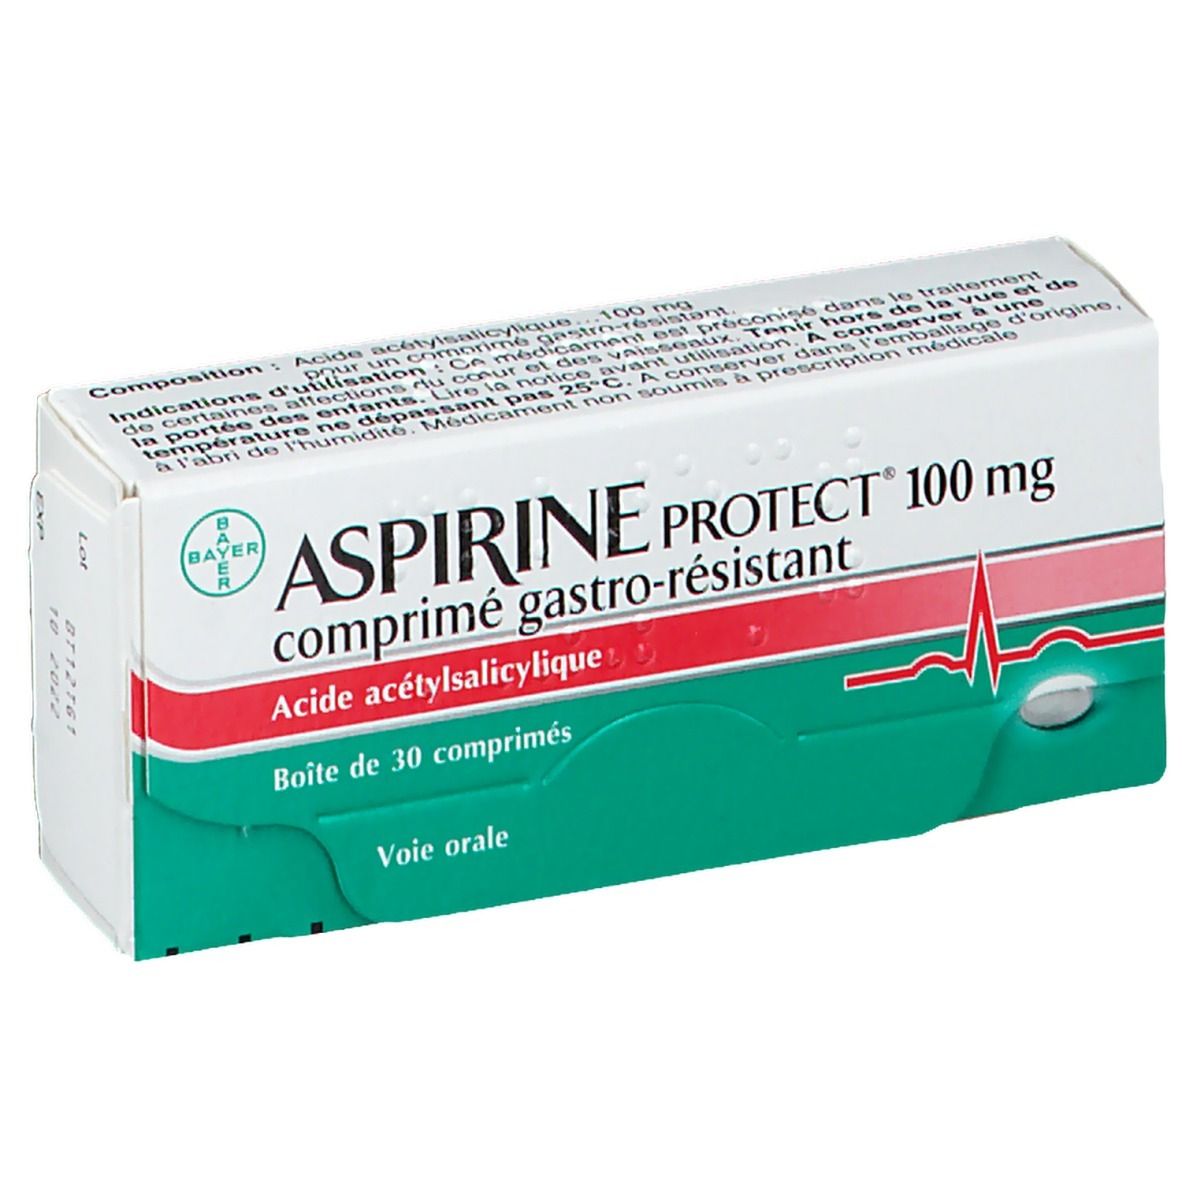 Aspirine Protect® 100 mg